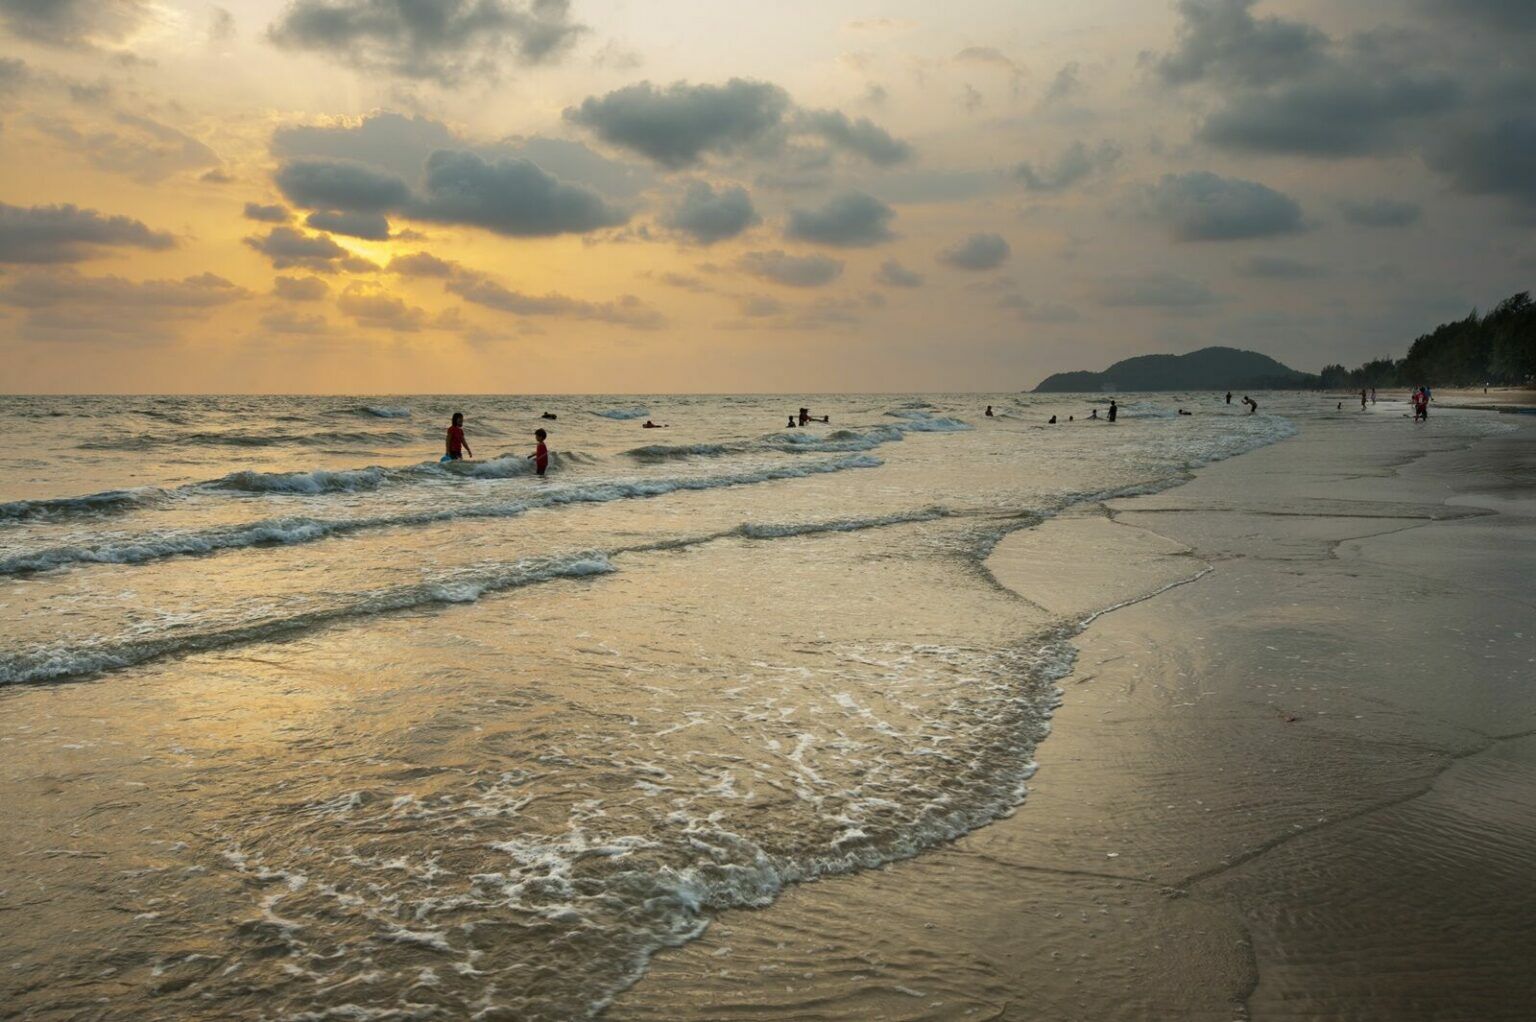 ลานหินสีชมพู ที่เที่ยวจันทบุรี หาด Chao Lao Beach